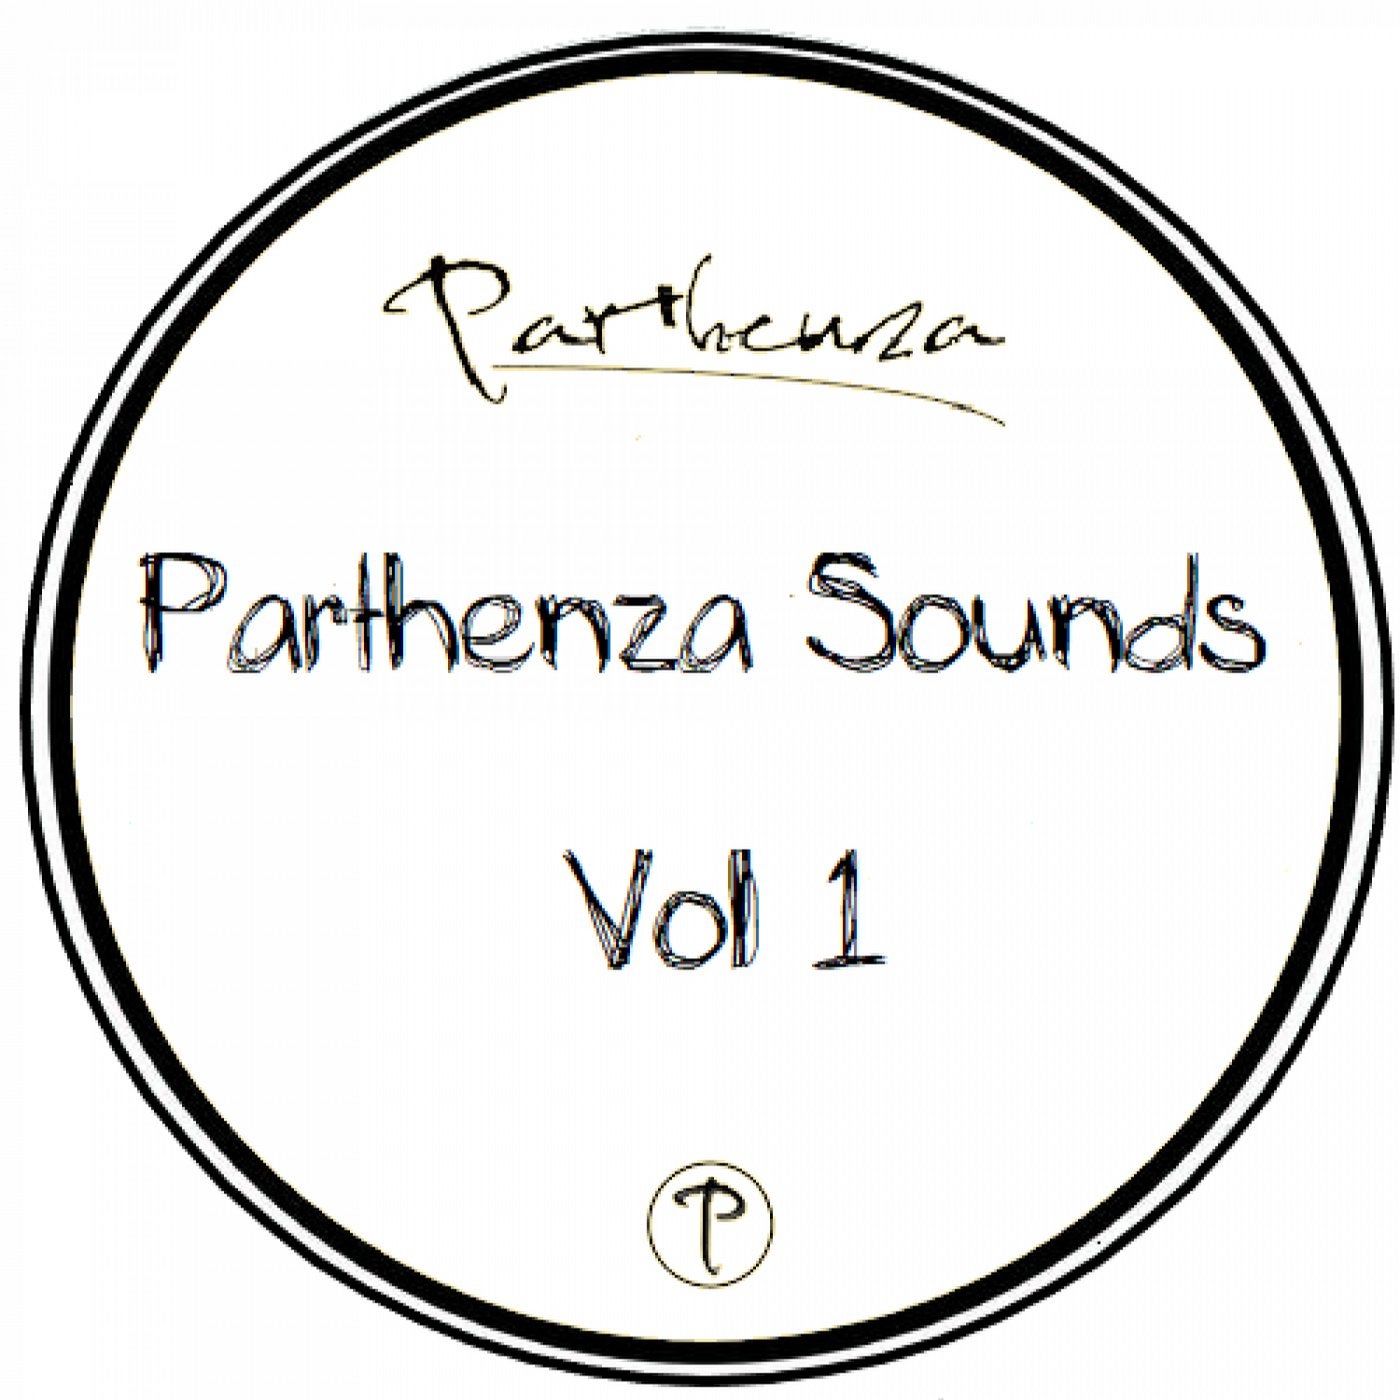 Parthenza Sounds  vol 01